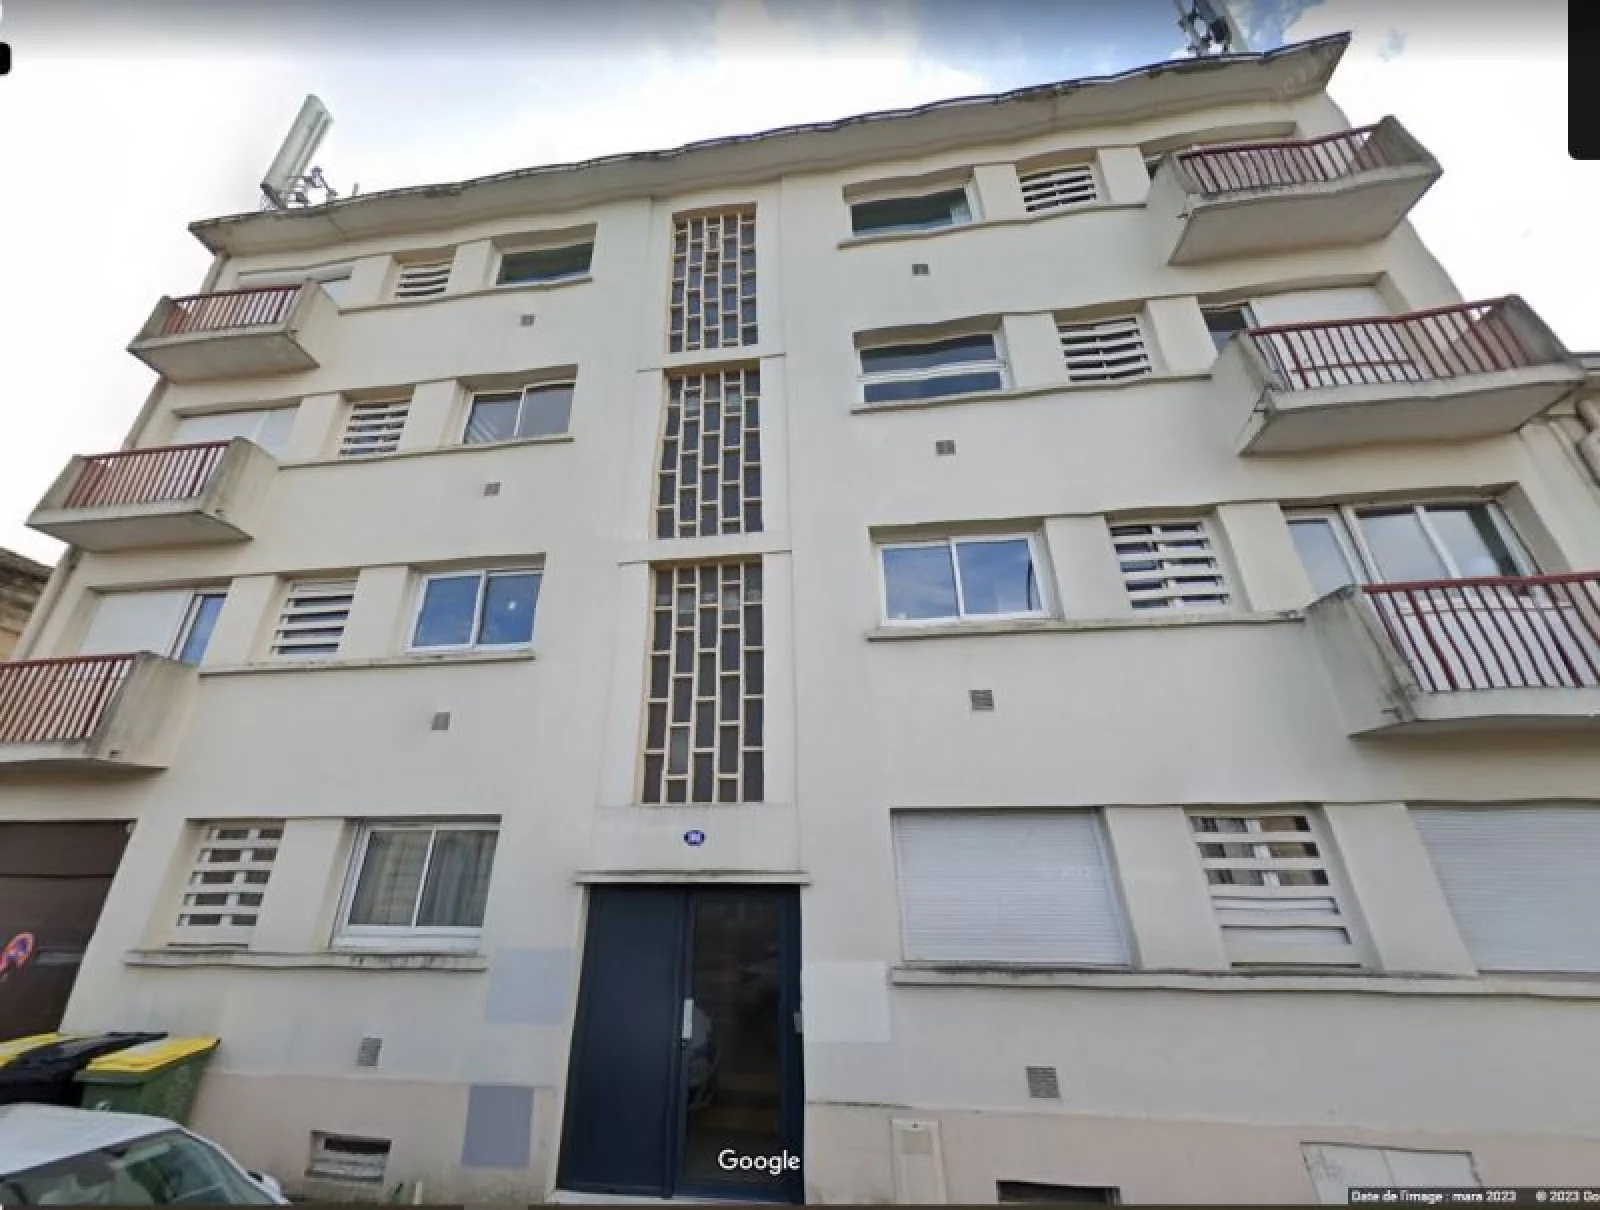 Location appartement 3 pièces meublé 73m² (Bordeaux -Saint Jean)